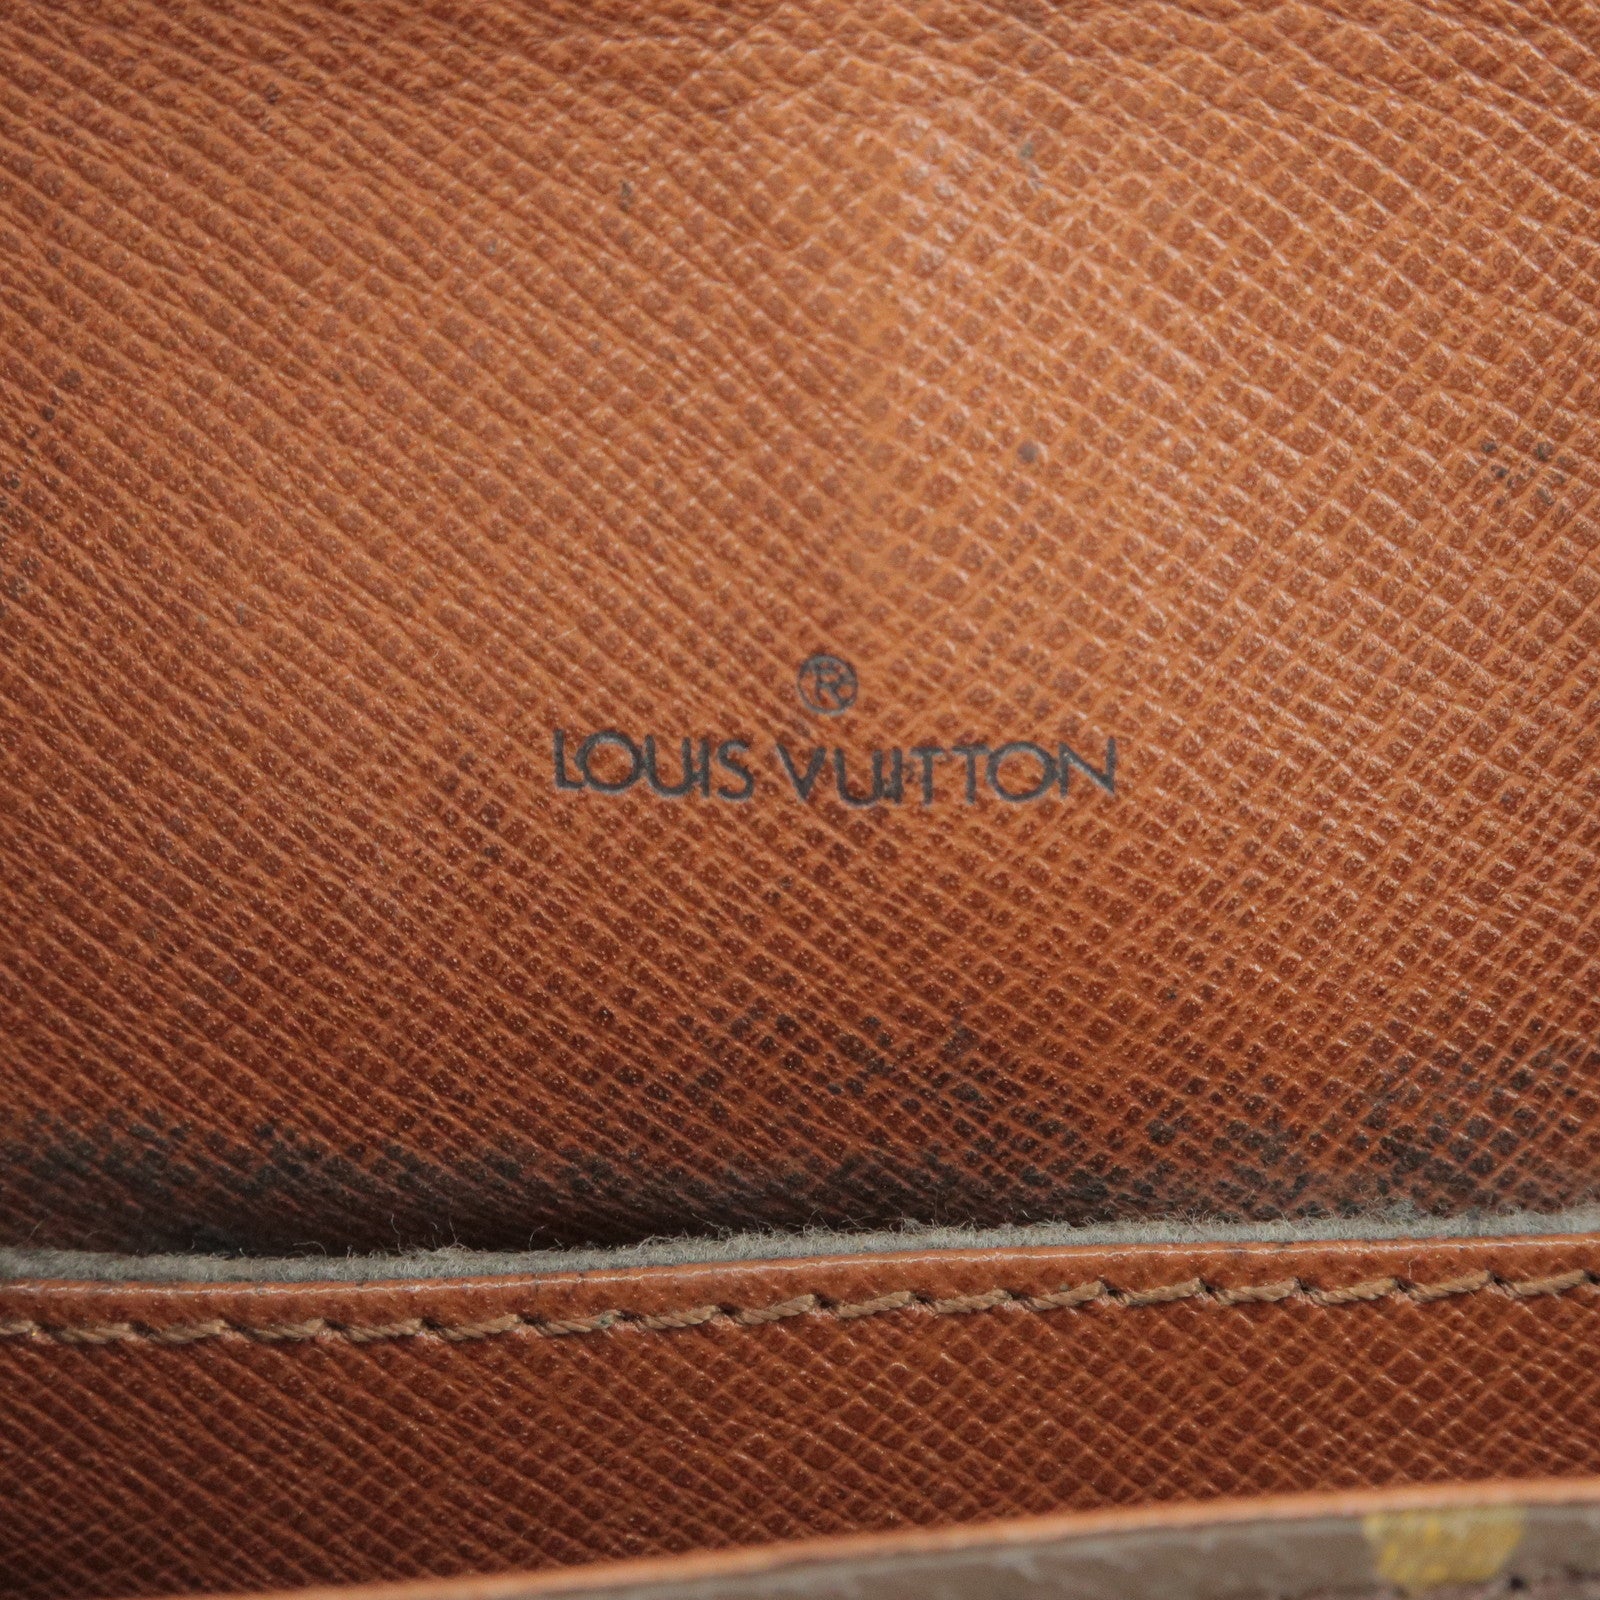 Authentic NEW Louis Vuitton Black Monogram Shadow Calf Leather Discove –  Paris Station Shop